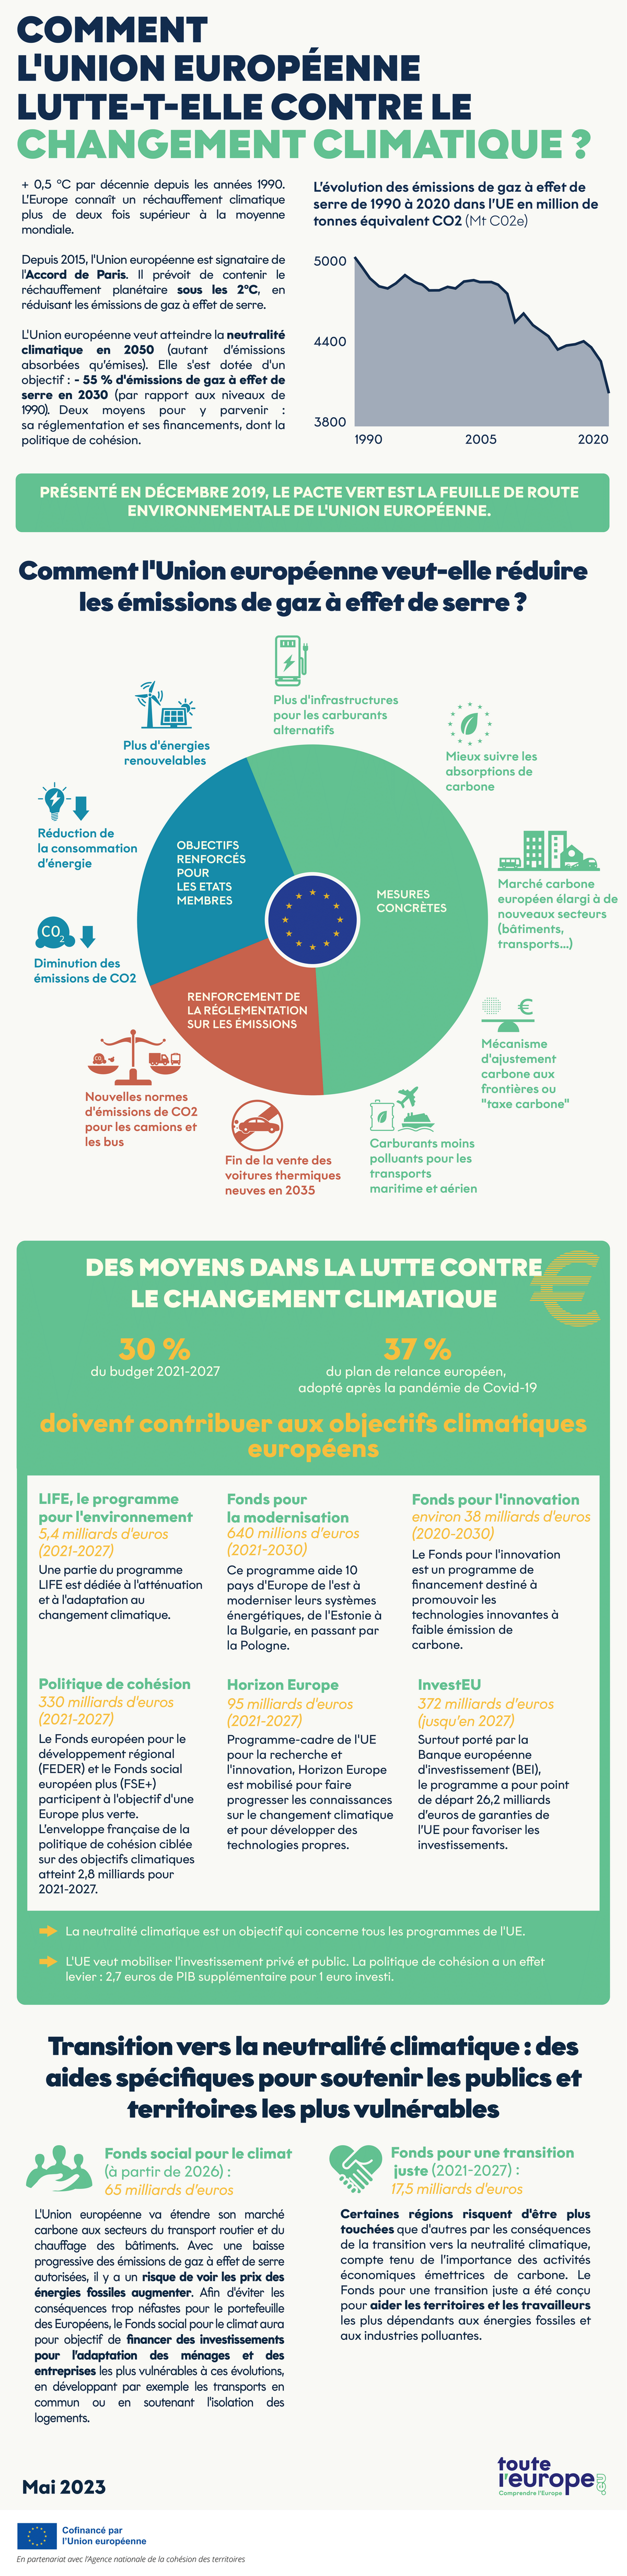 [Infographie] Comment l'Union européenne lutte-t-elle contre le changement climatique ?